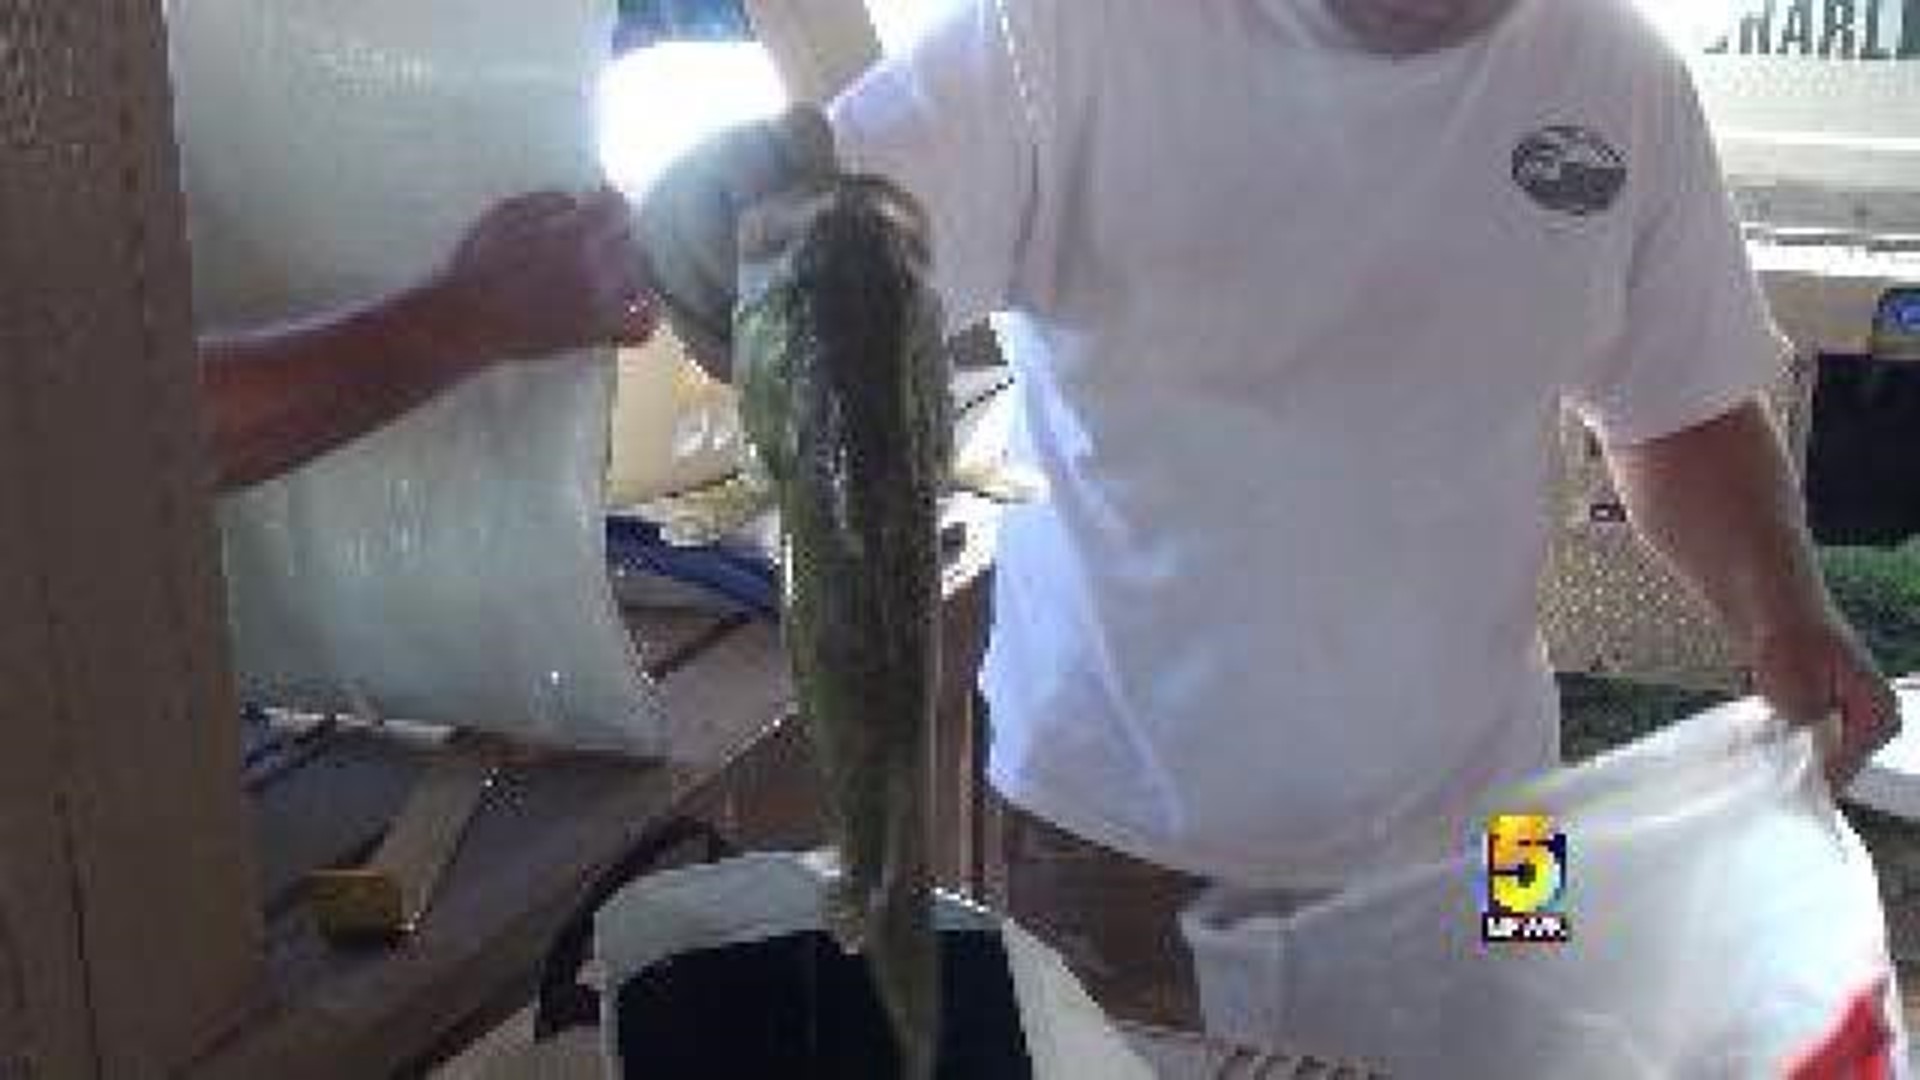 Amateur Fishermen Hoping To Catch Big Bass